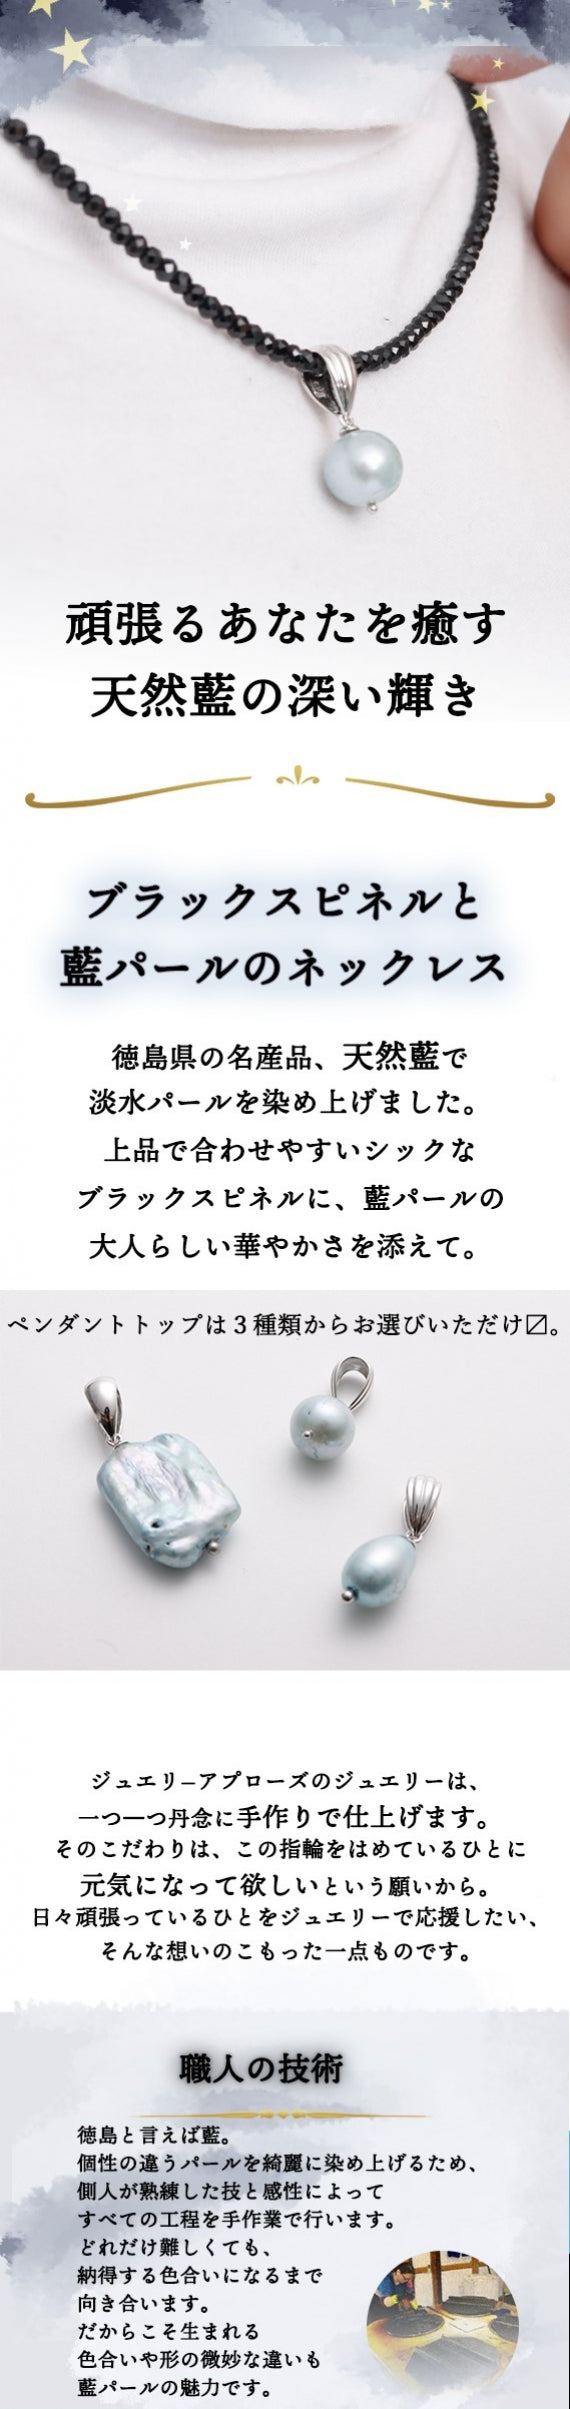 藍パールネックレス・楕円【生活用品・工芸品】